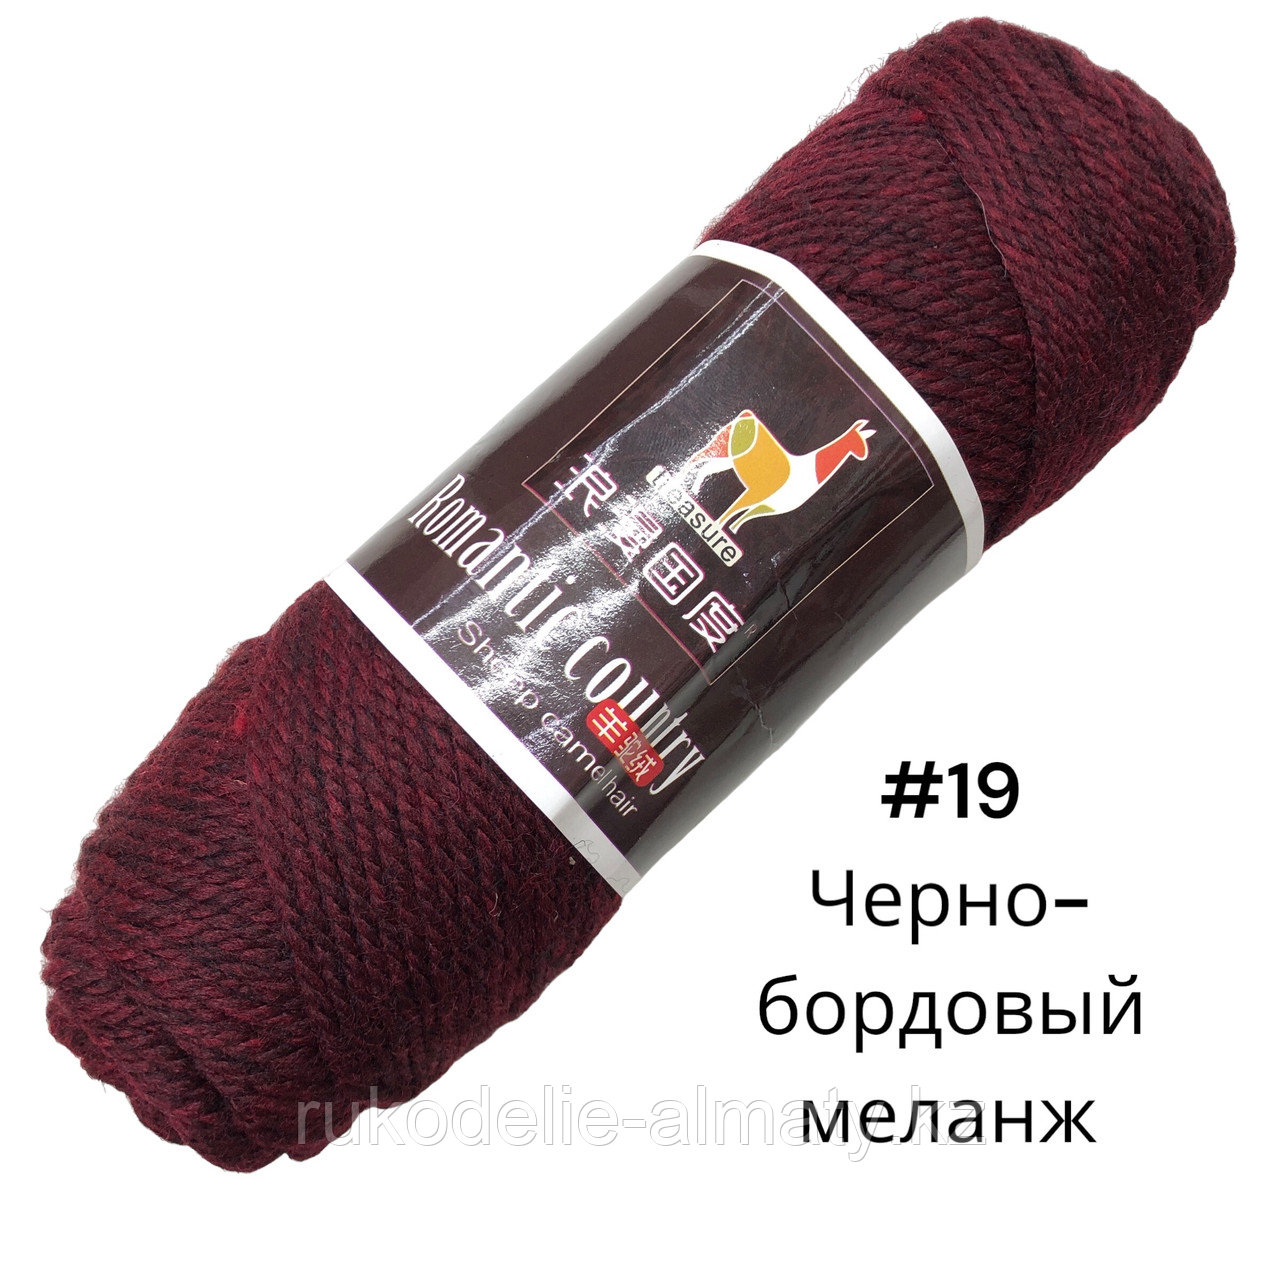 Пряжа для ручного вязания “Romantic country” в ассортимент черно-бордовый меланж